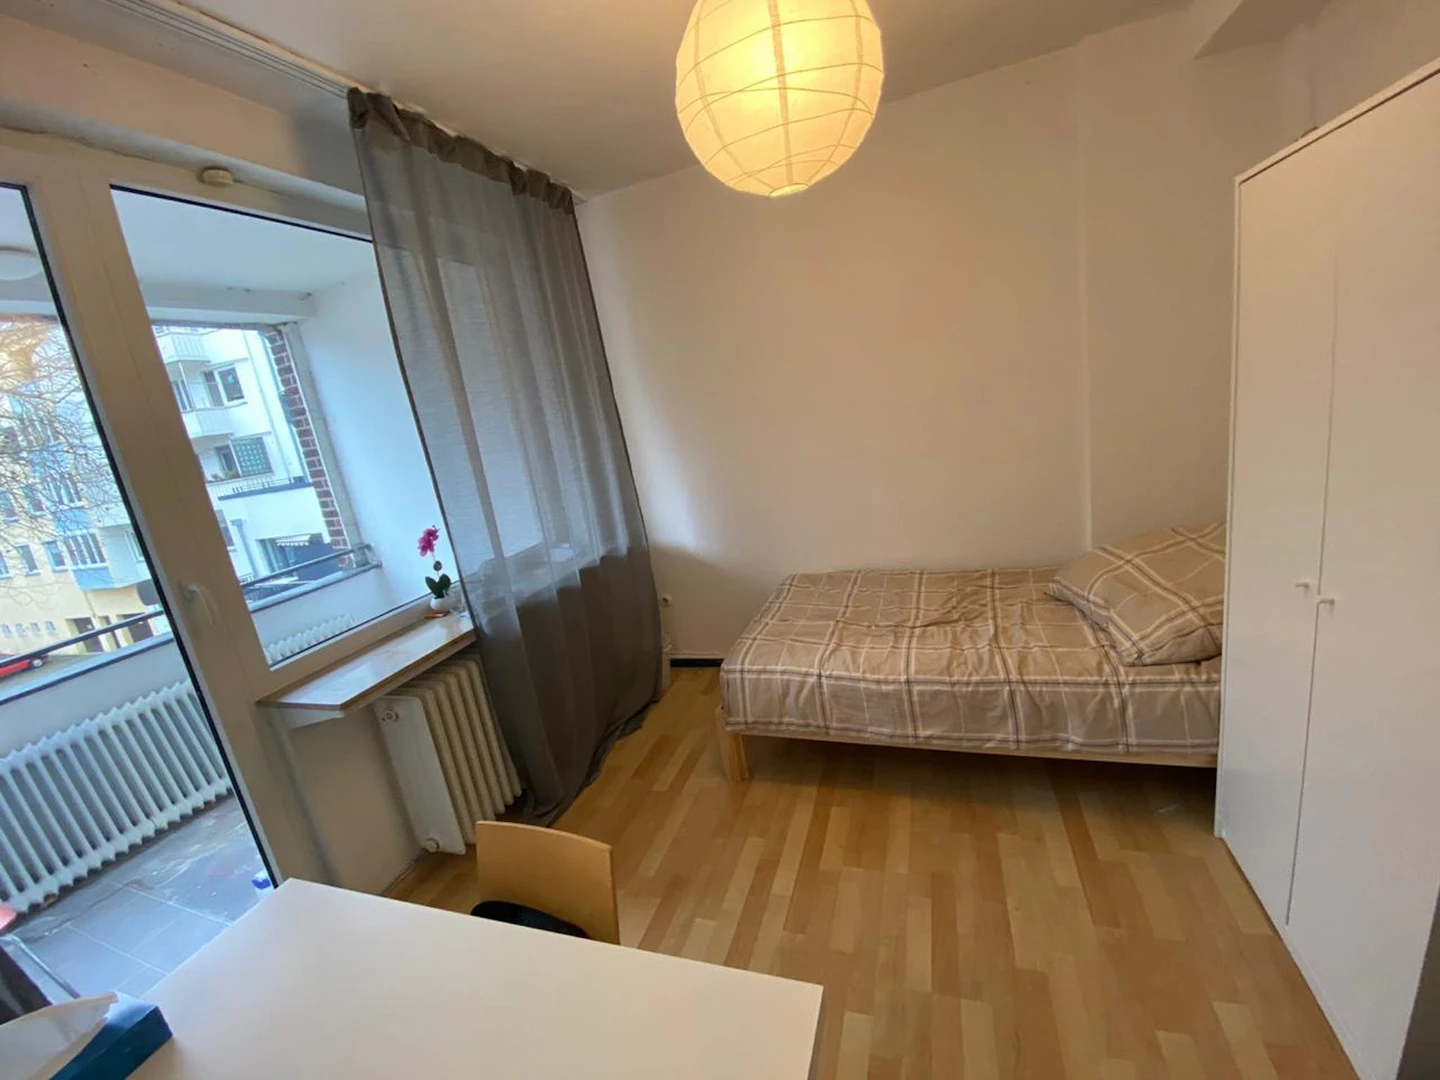 Alquiler de habitación en piso compartido en Bremen